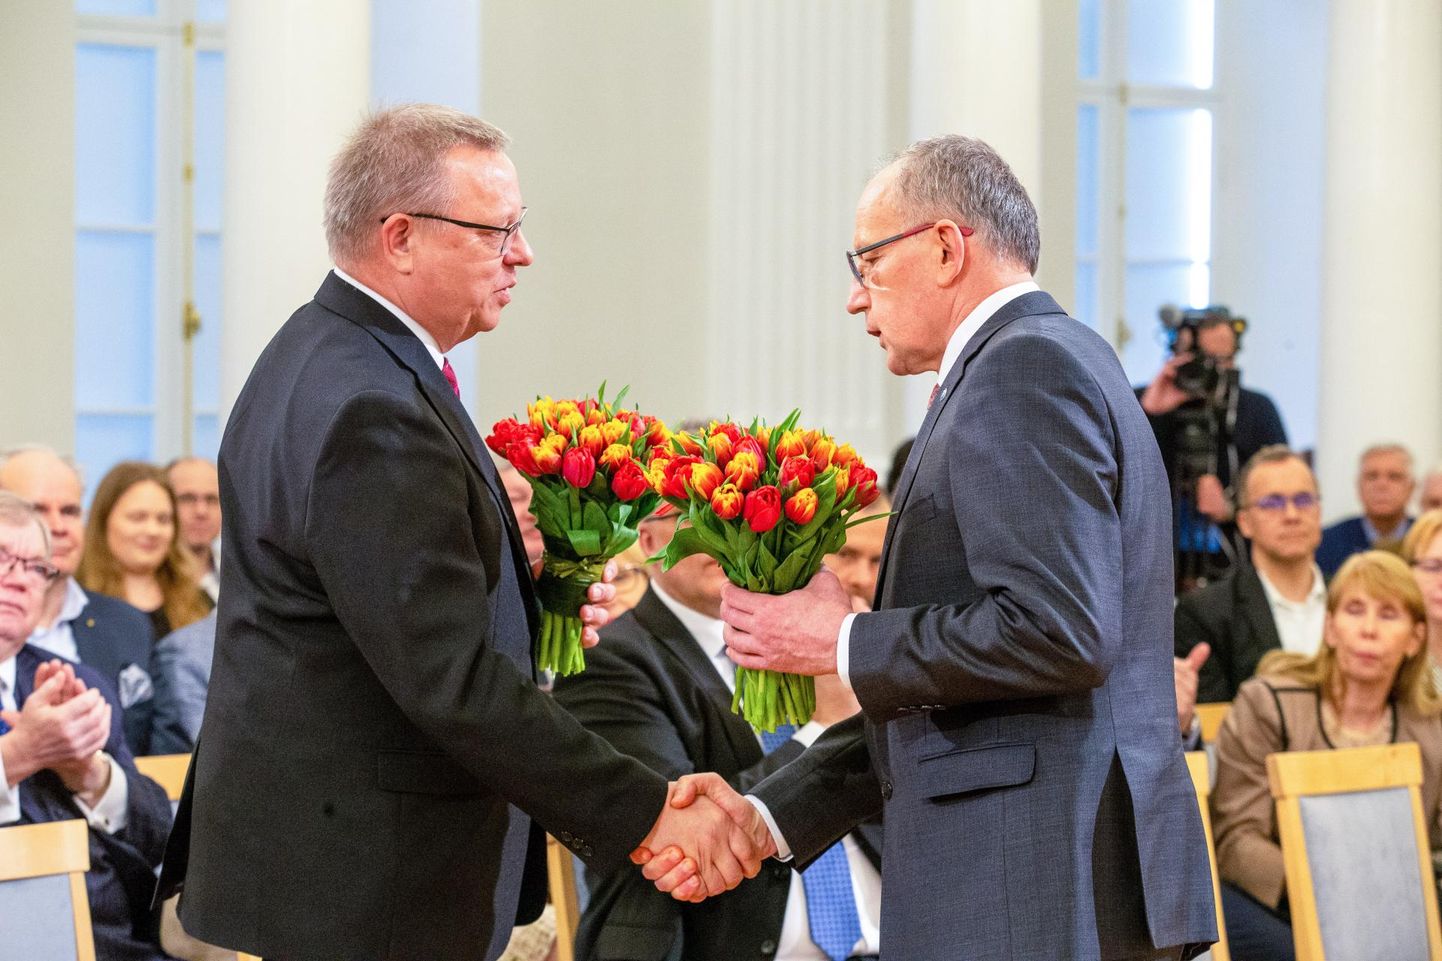 Kevadel kandideeris Raul Eamets (vasakul) Tartu Ülikooli rektoriks. Tänasest Eametsal sinna majja enam asja pole